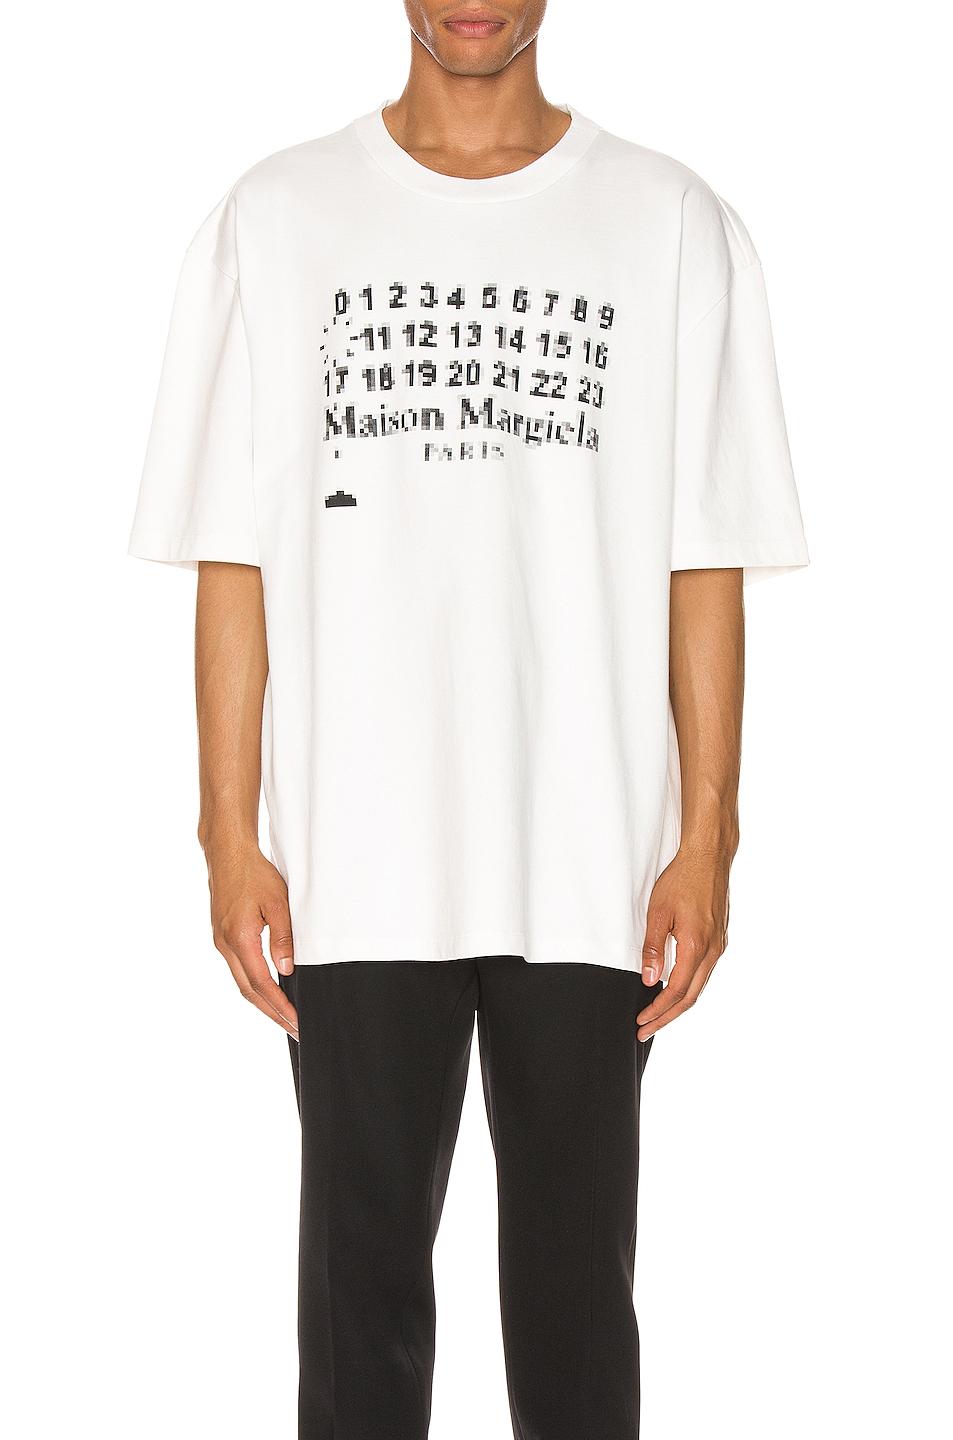 Maison Margiela Logo Print T-shirt in White for Men - Lyst